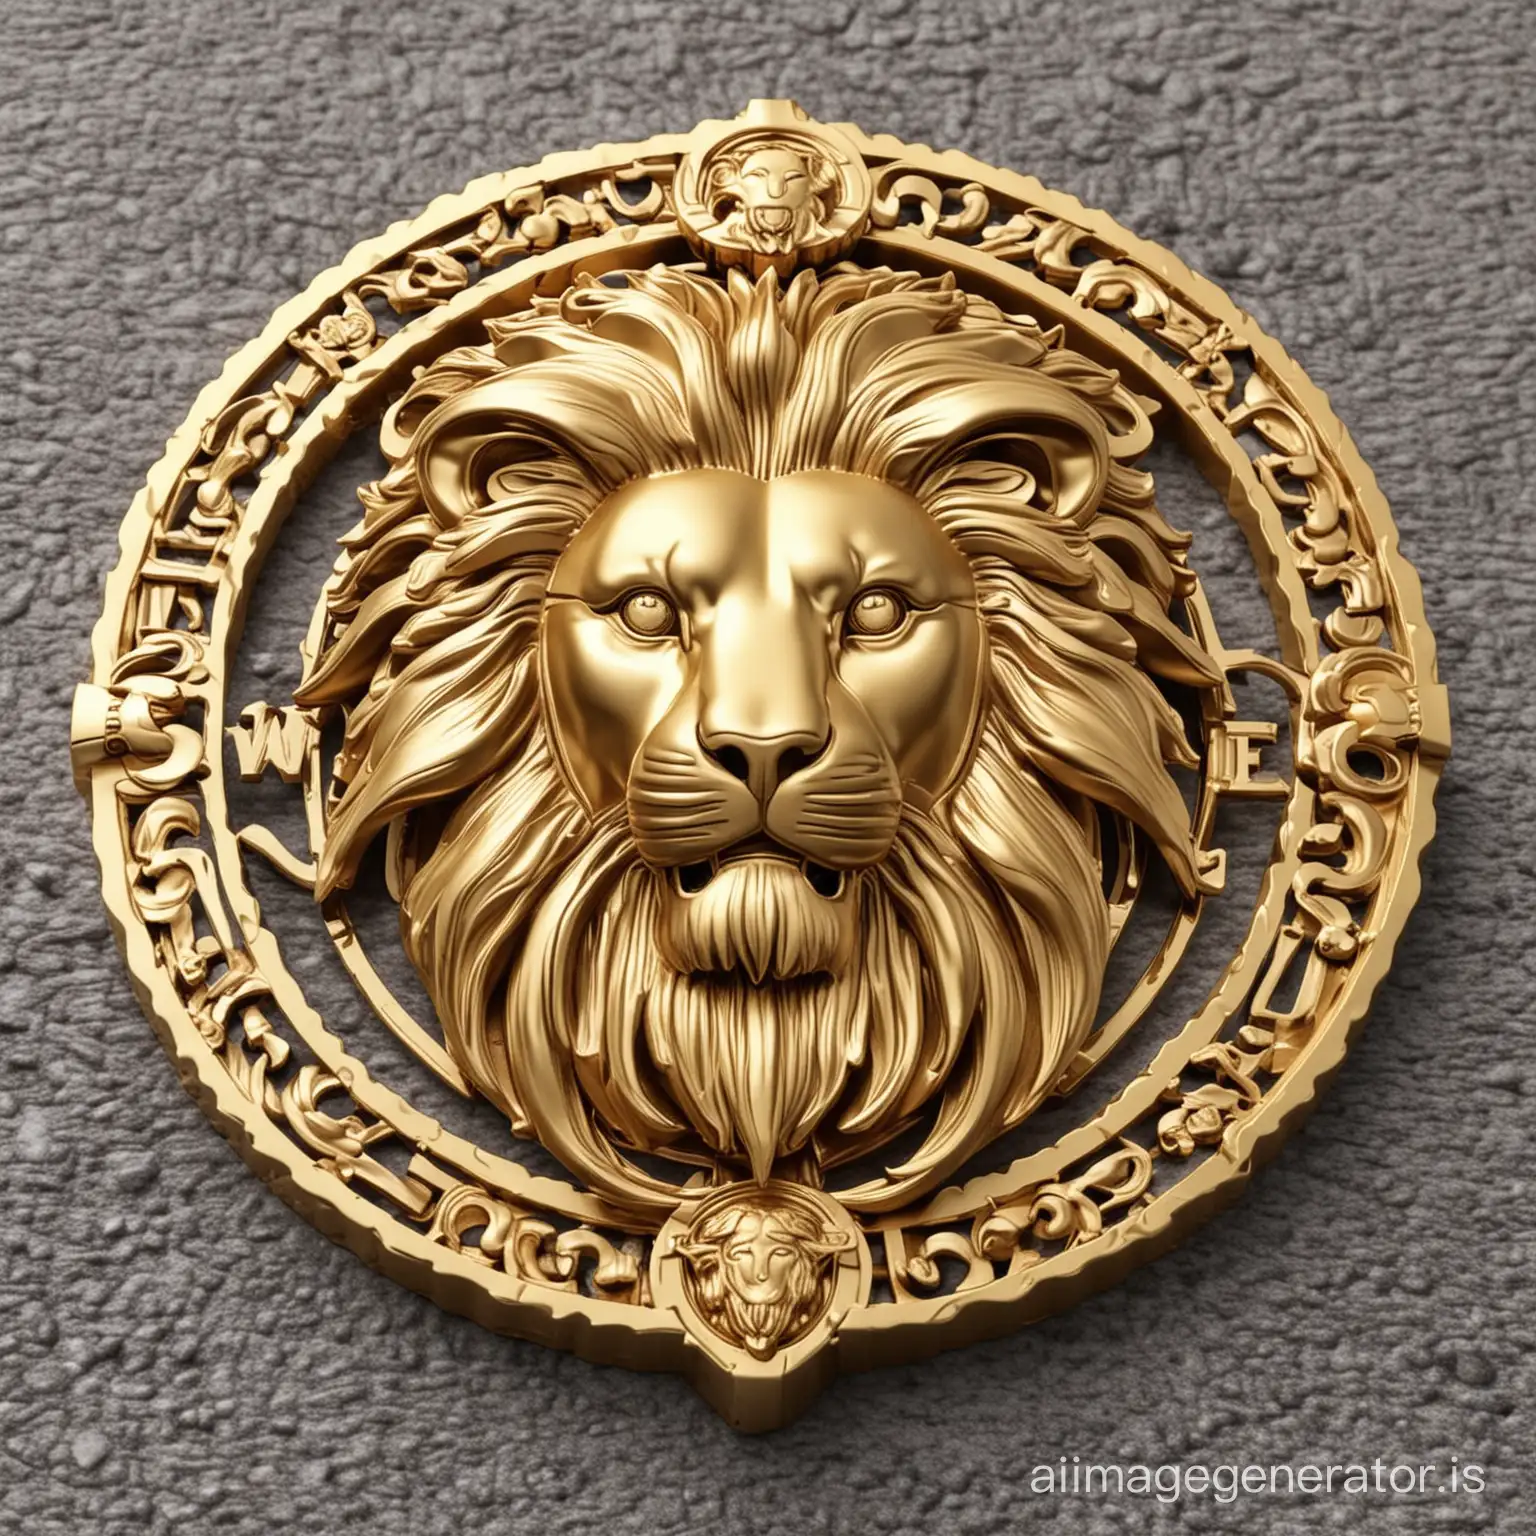 lion logo Versace style gold color